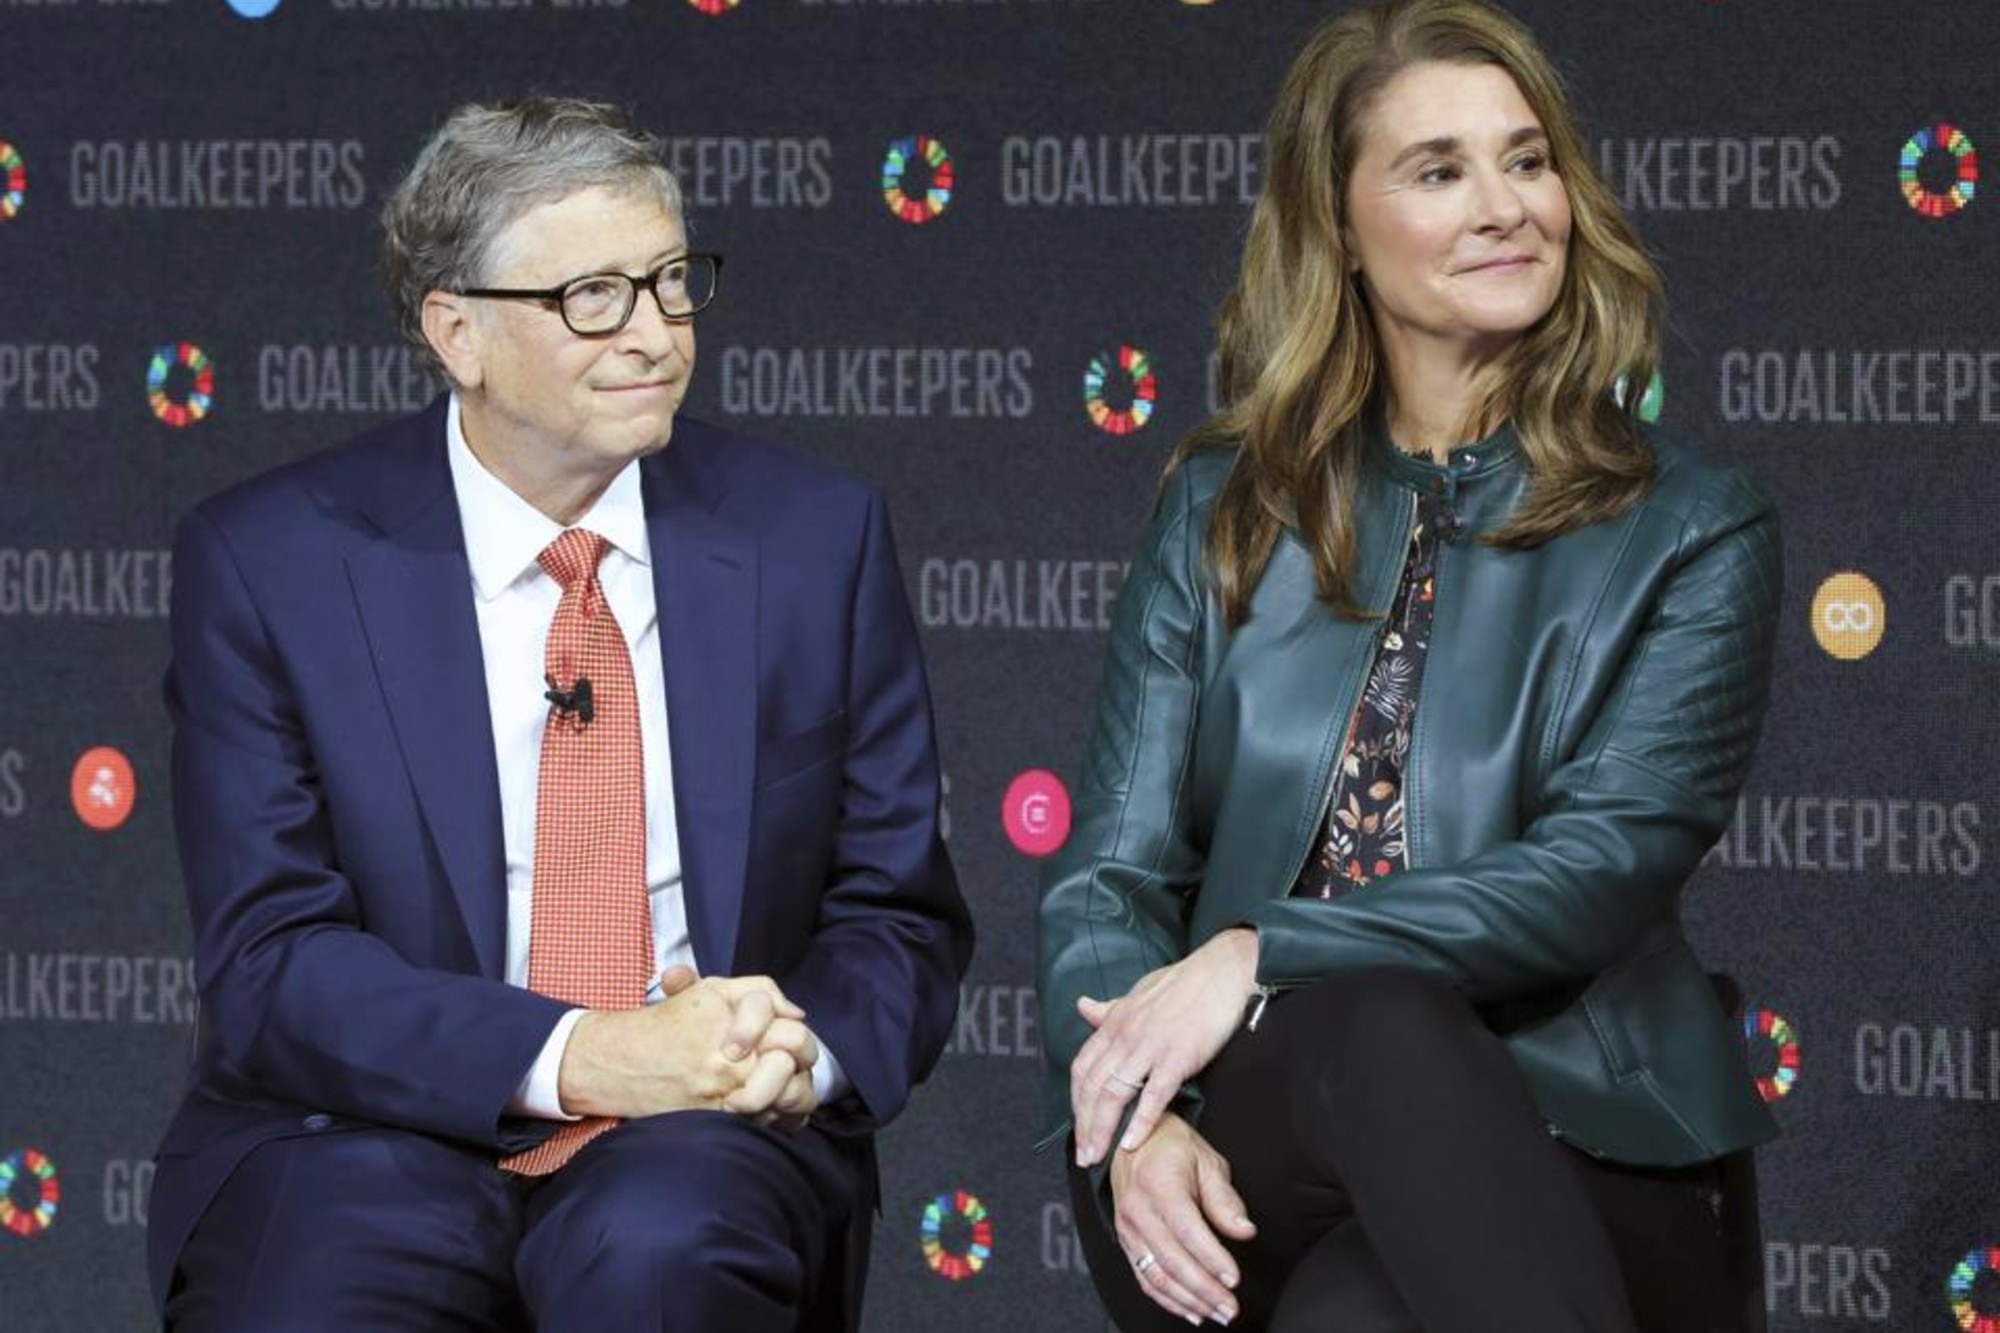 Empresa financiada por Bill Gates quer usar VR em cirurgias - TecMundo